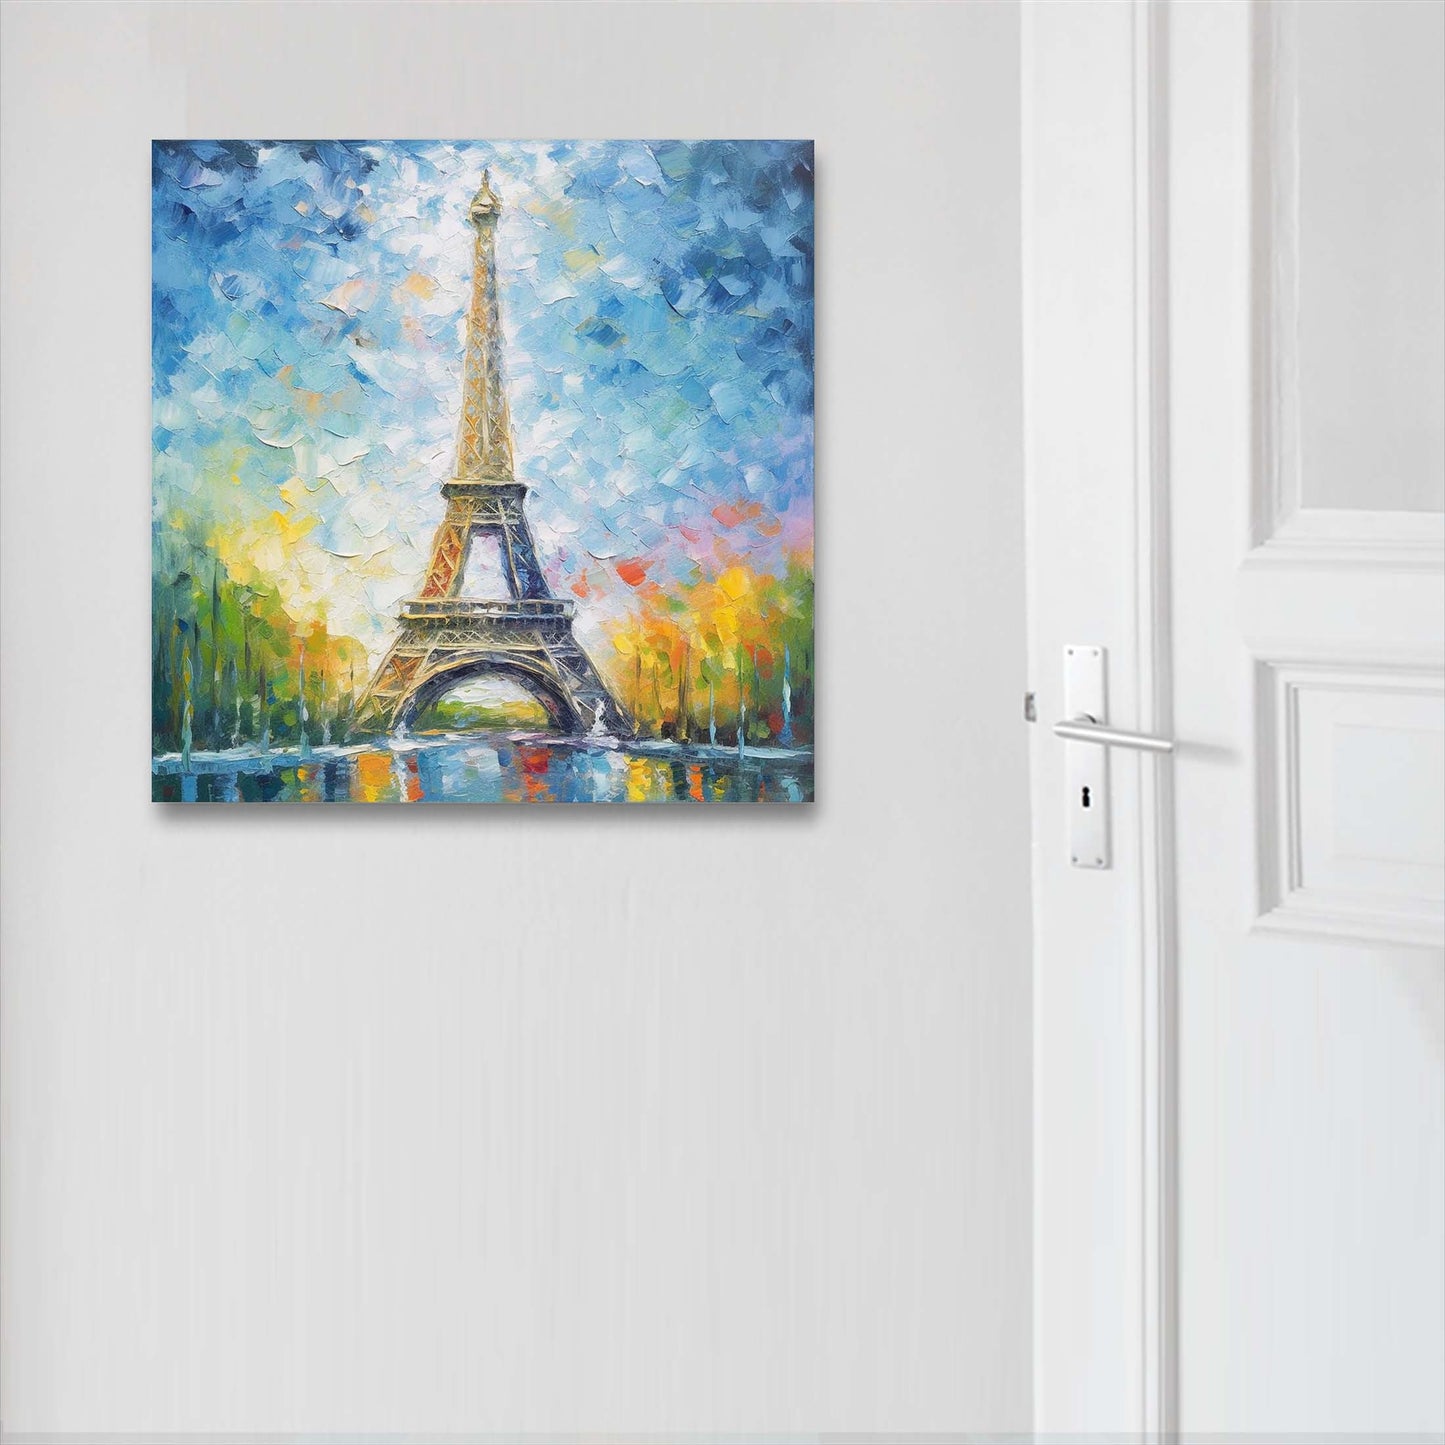 Paris Eiffelturm - Wandbild in der Stilrichtung des Impressionismus